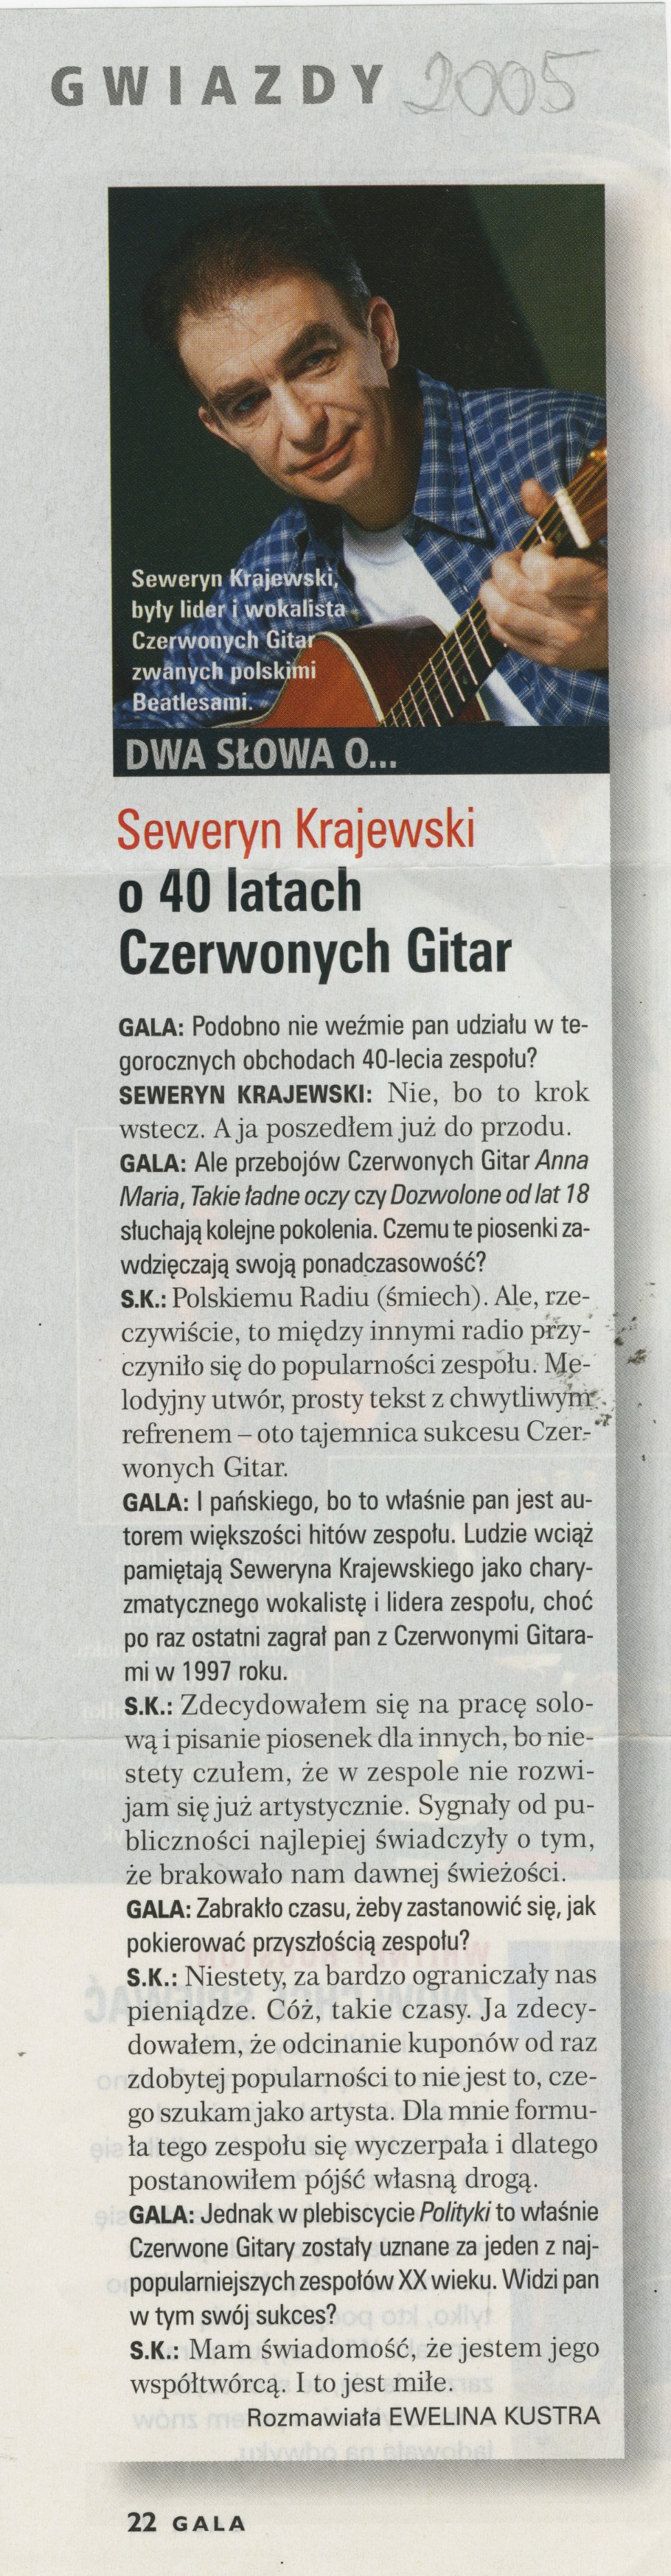 2004-2012-Gwiazdy_2005_40Lat_CzG